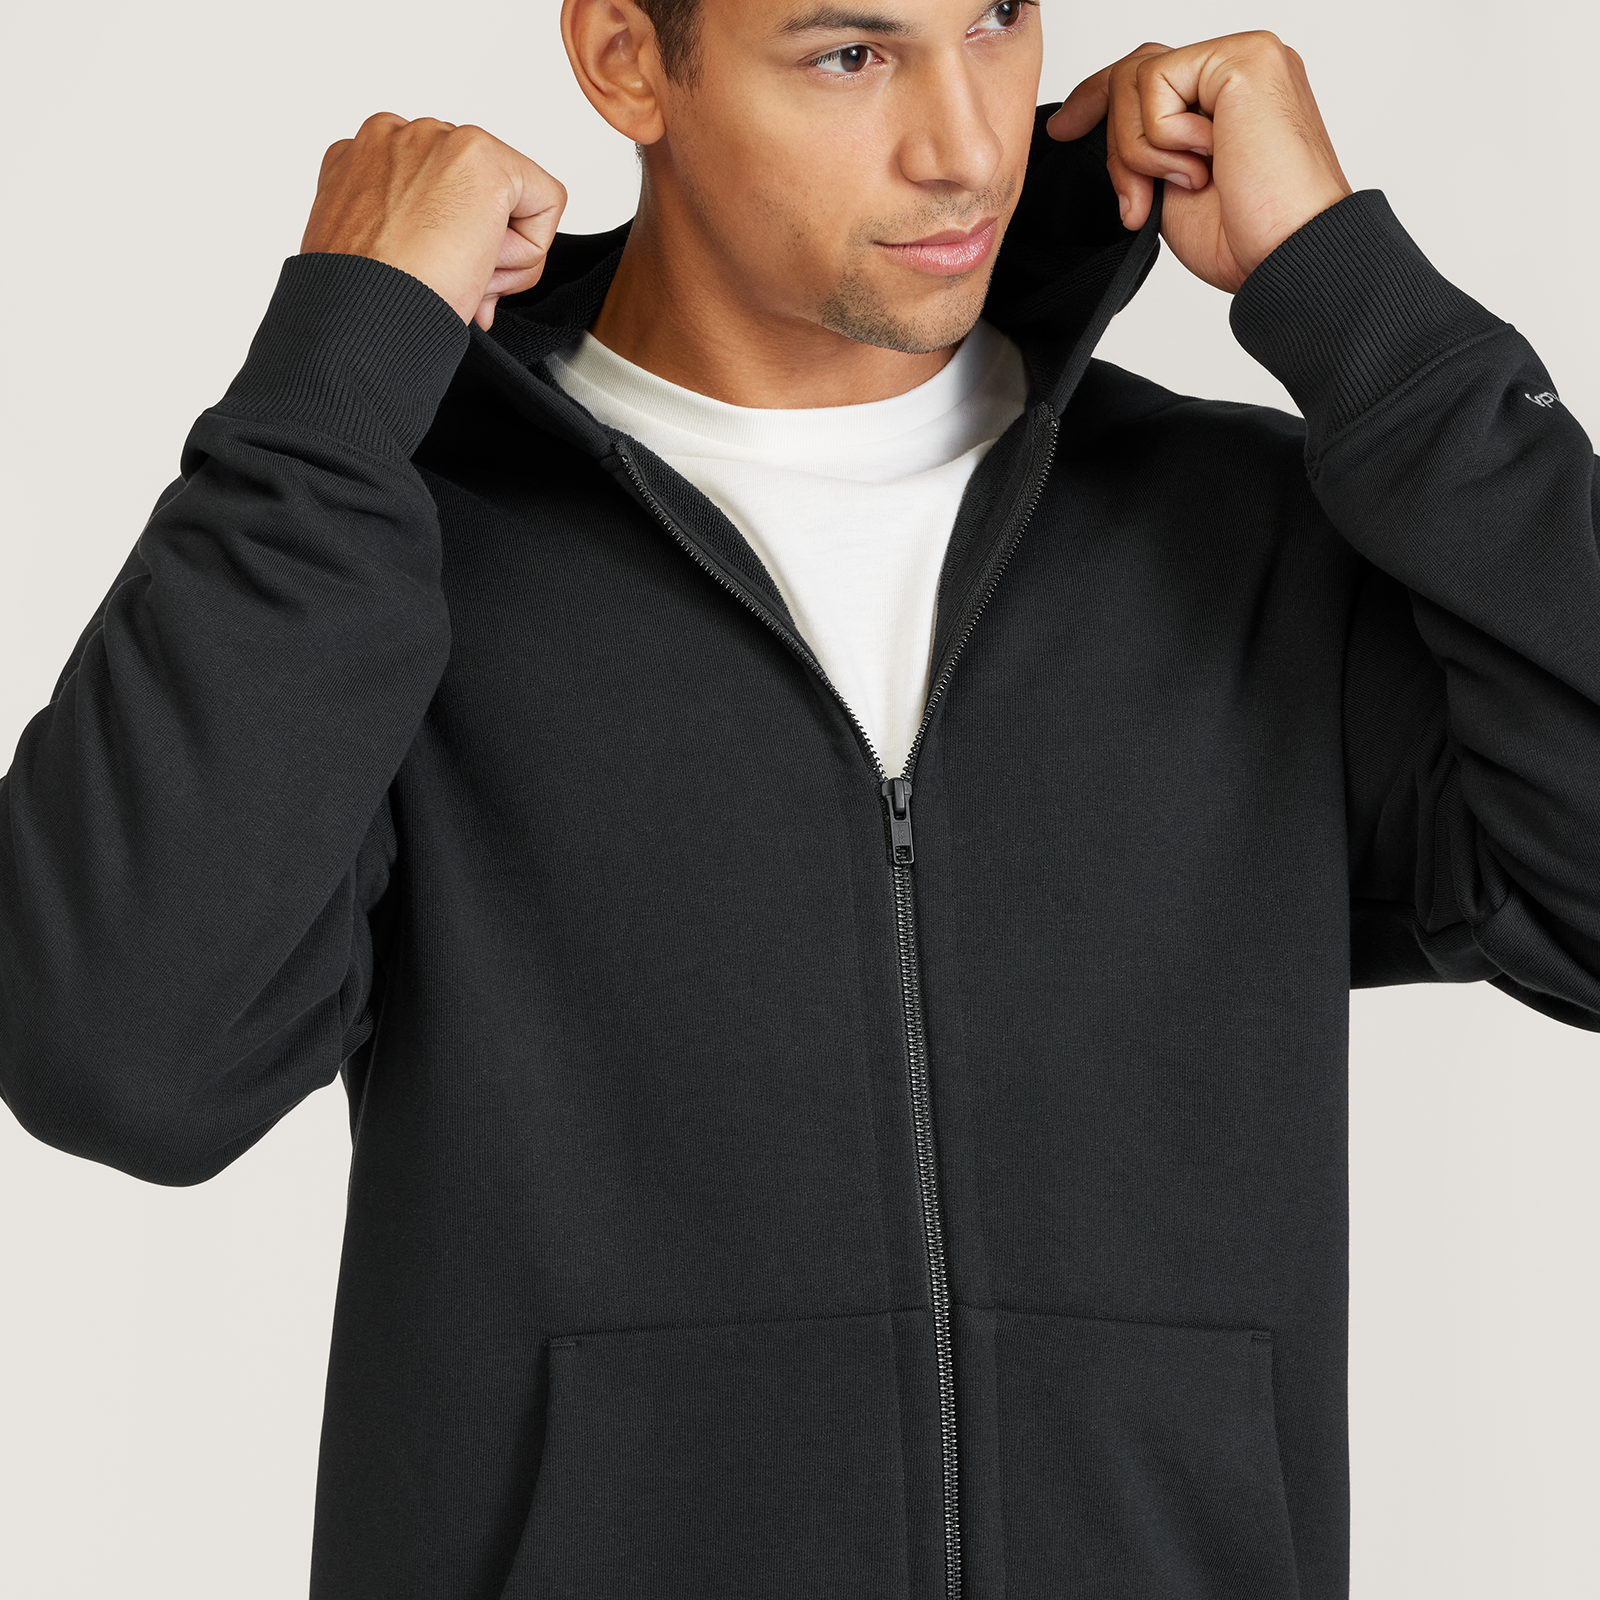 Mens Hoodies Zip Up Sports Casual Long Sleeve Comfort Black